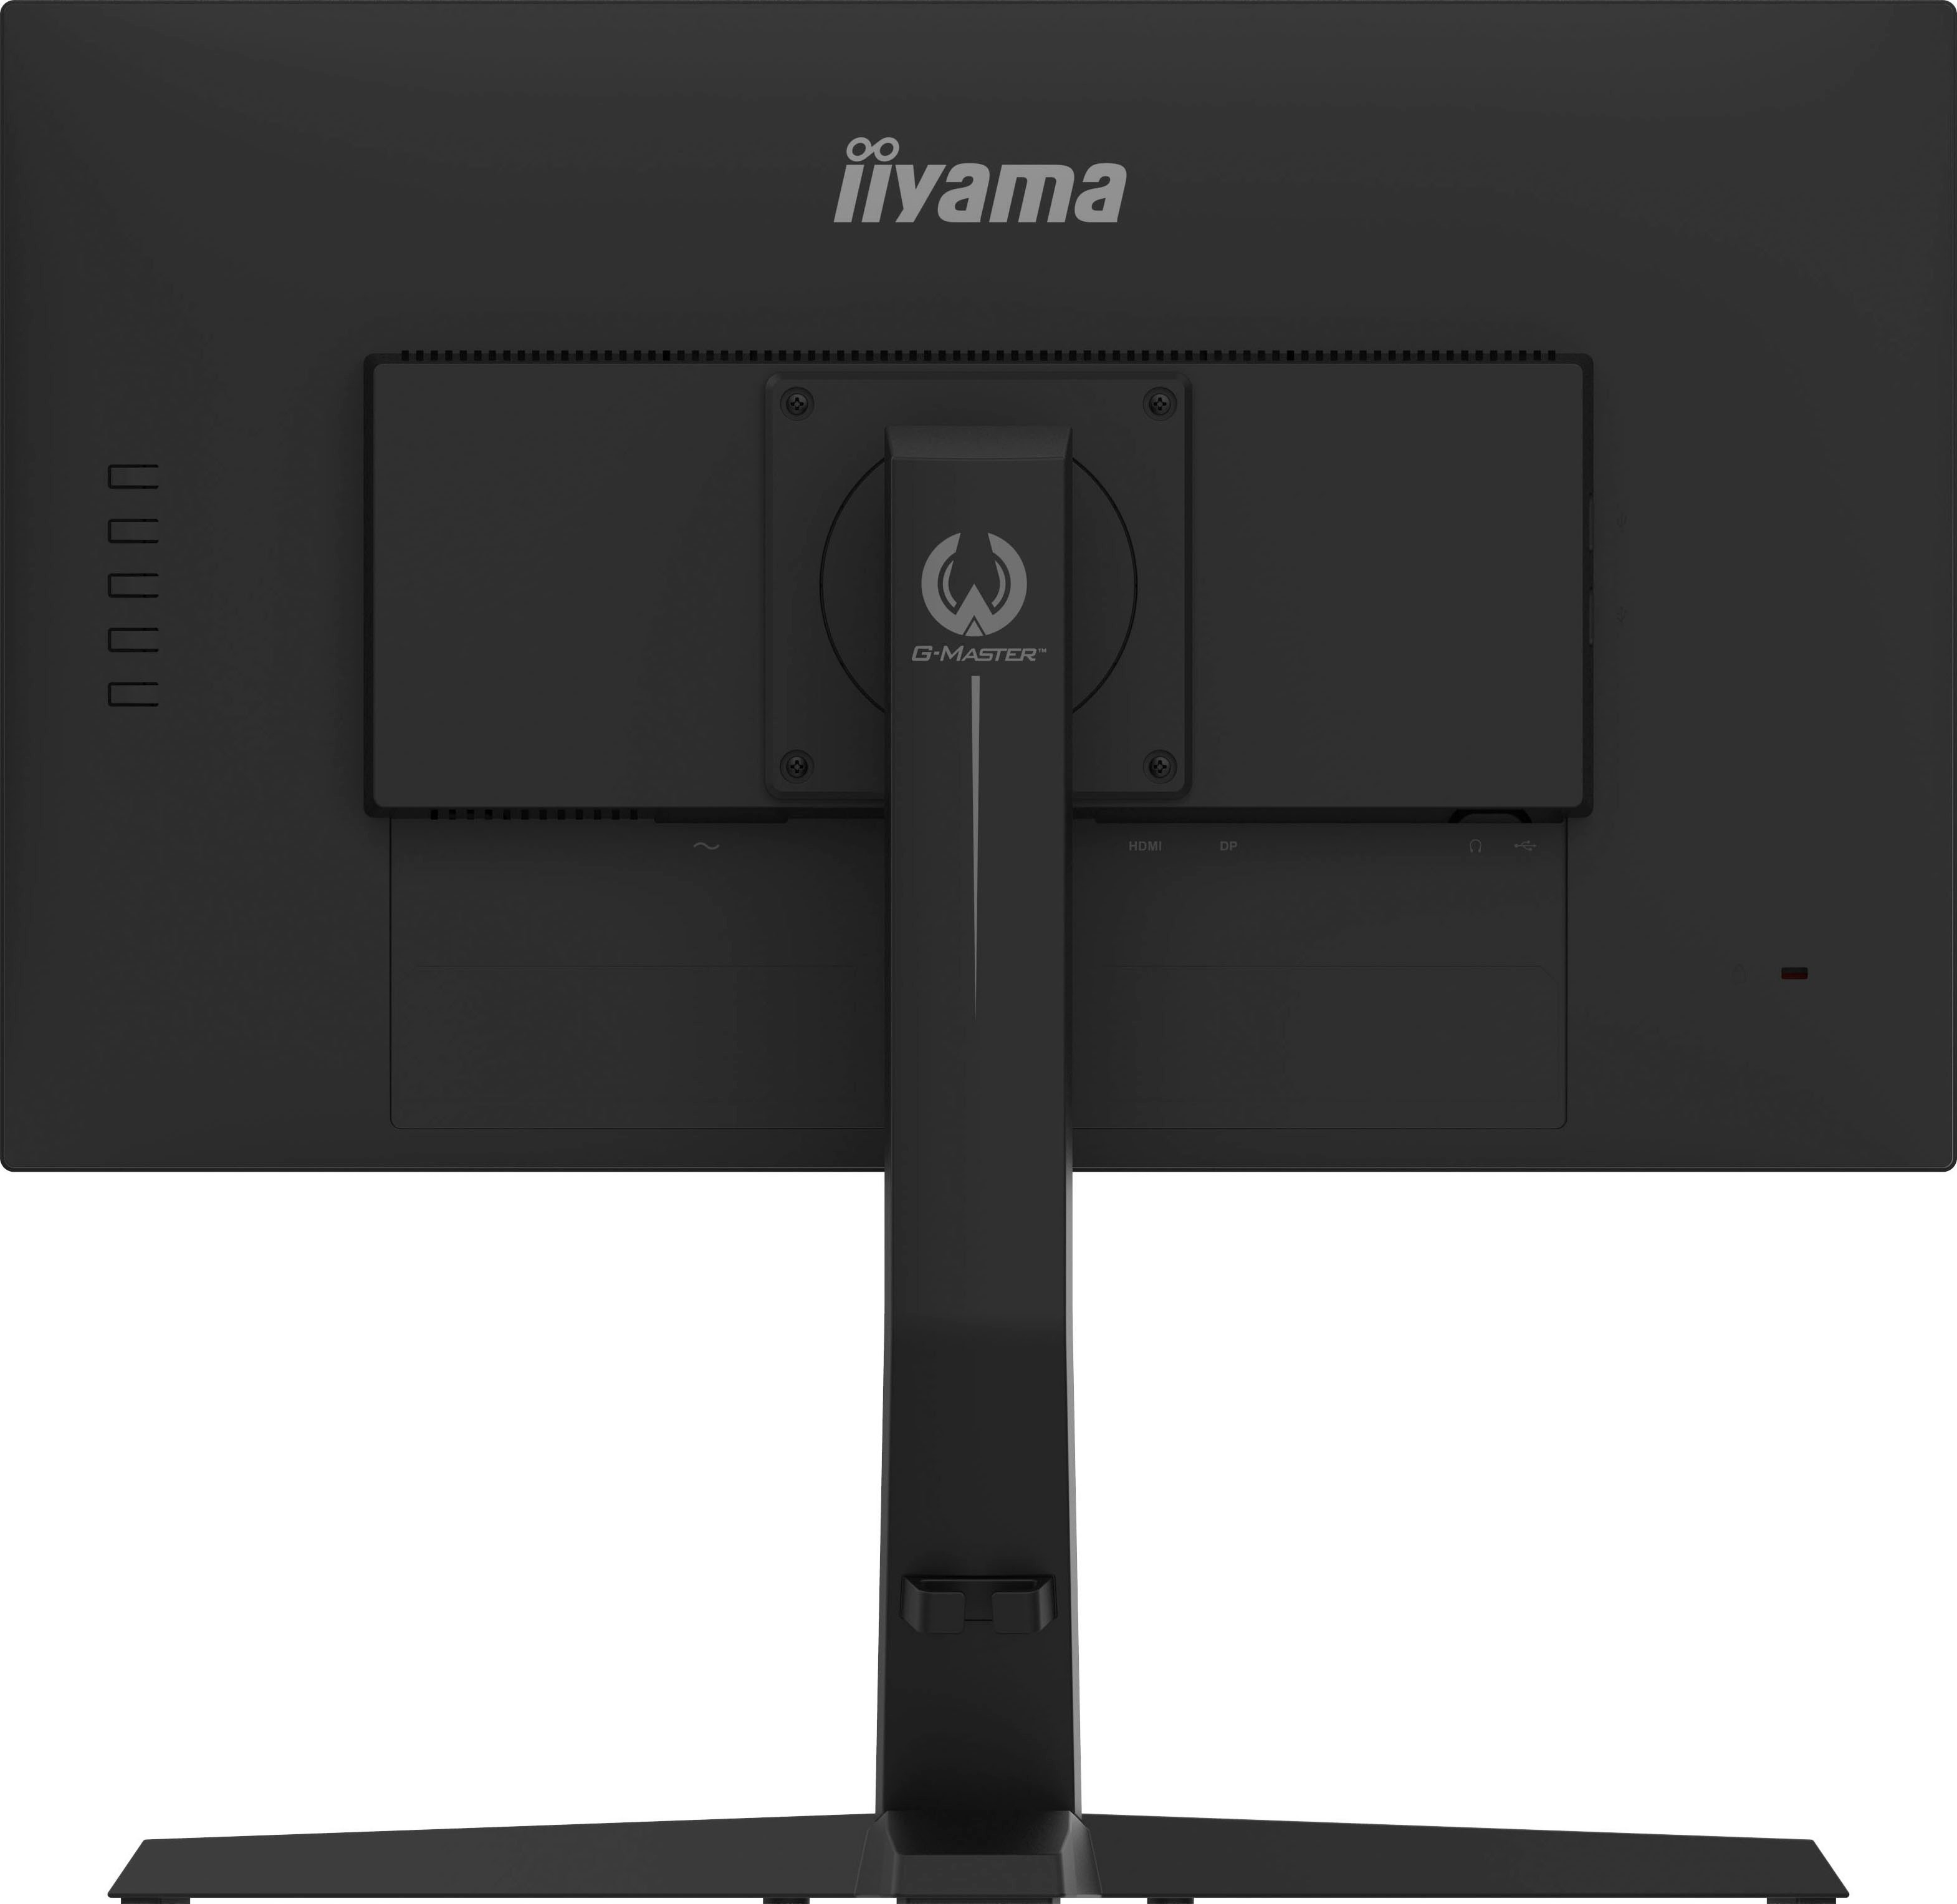 Iiyama Gaming-monitor G-MASTER GB2470HSU-B1, 61 cm / 24 